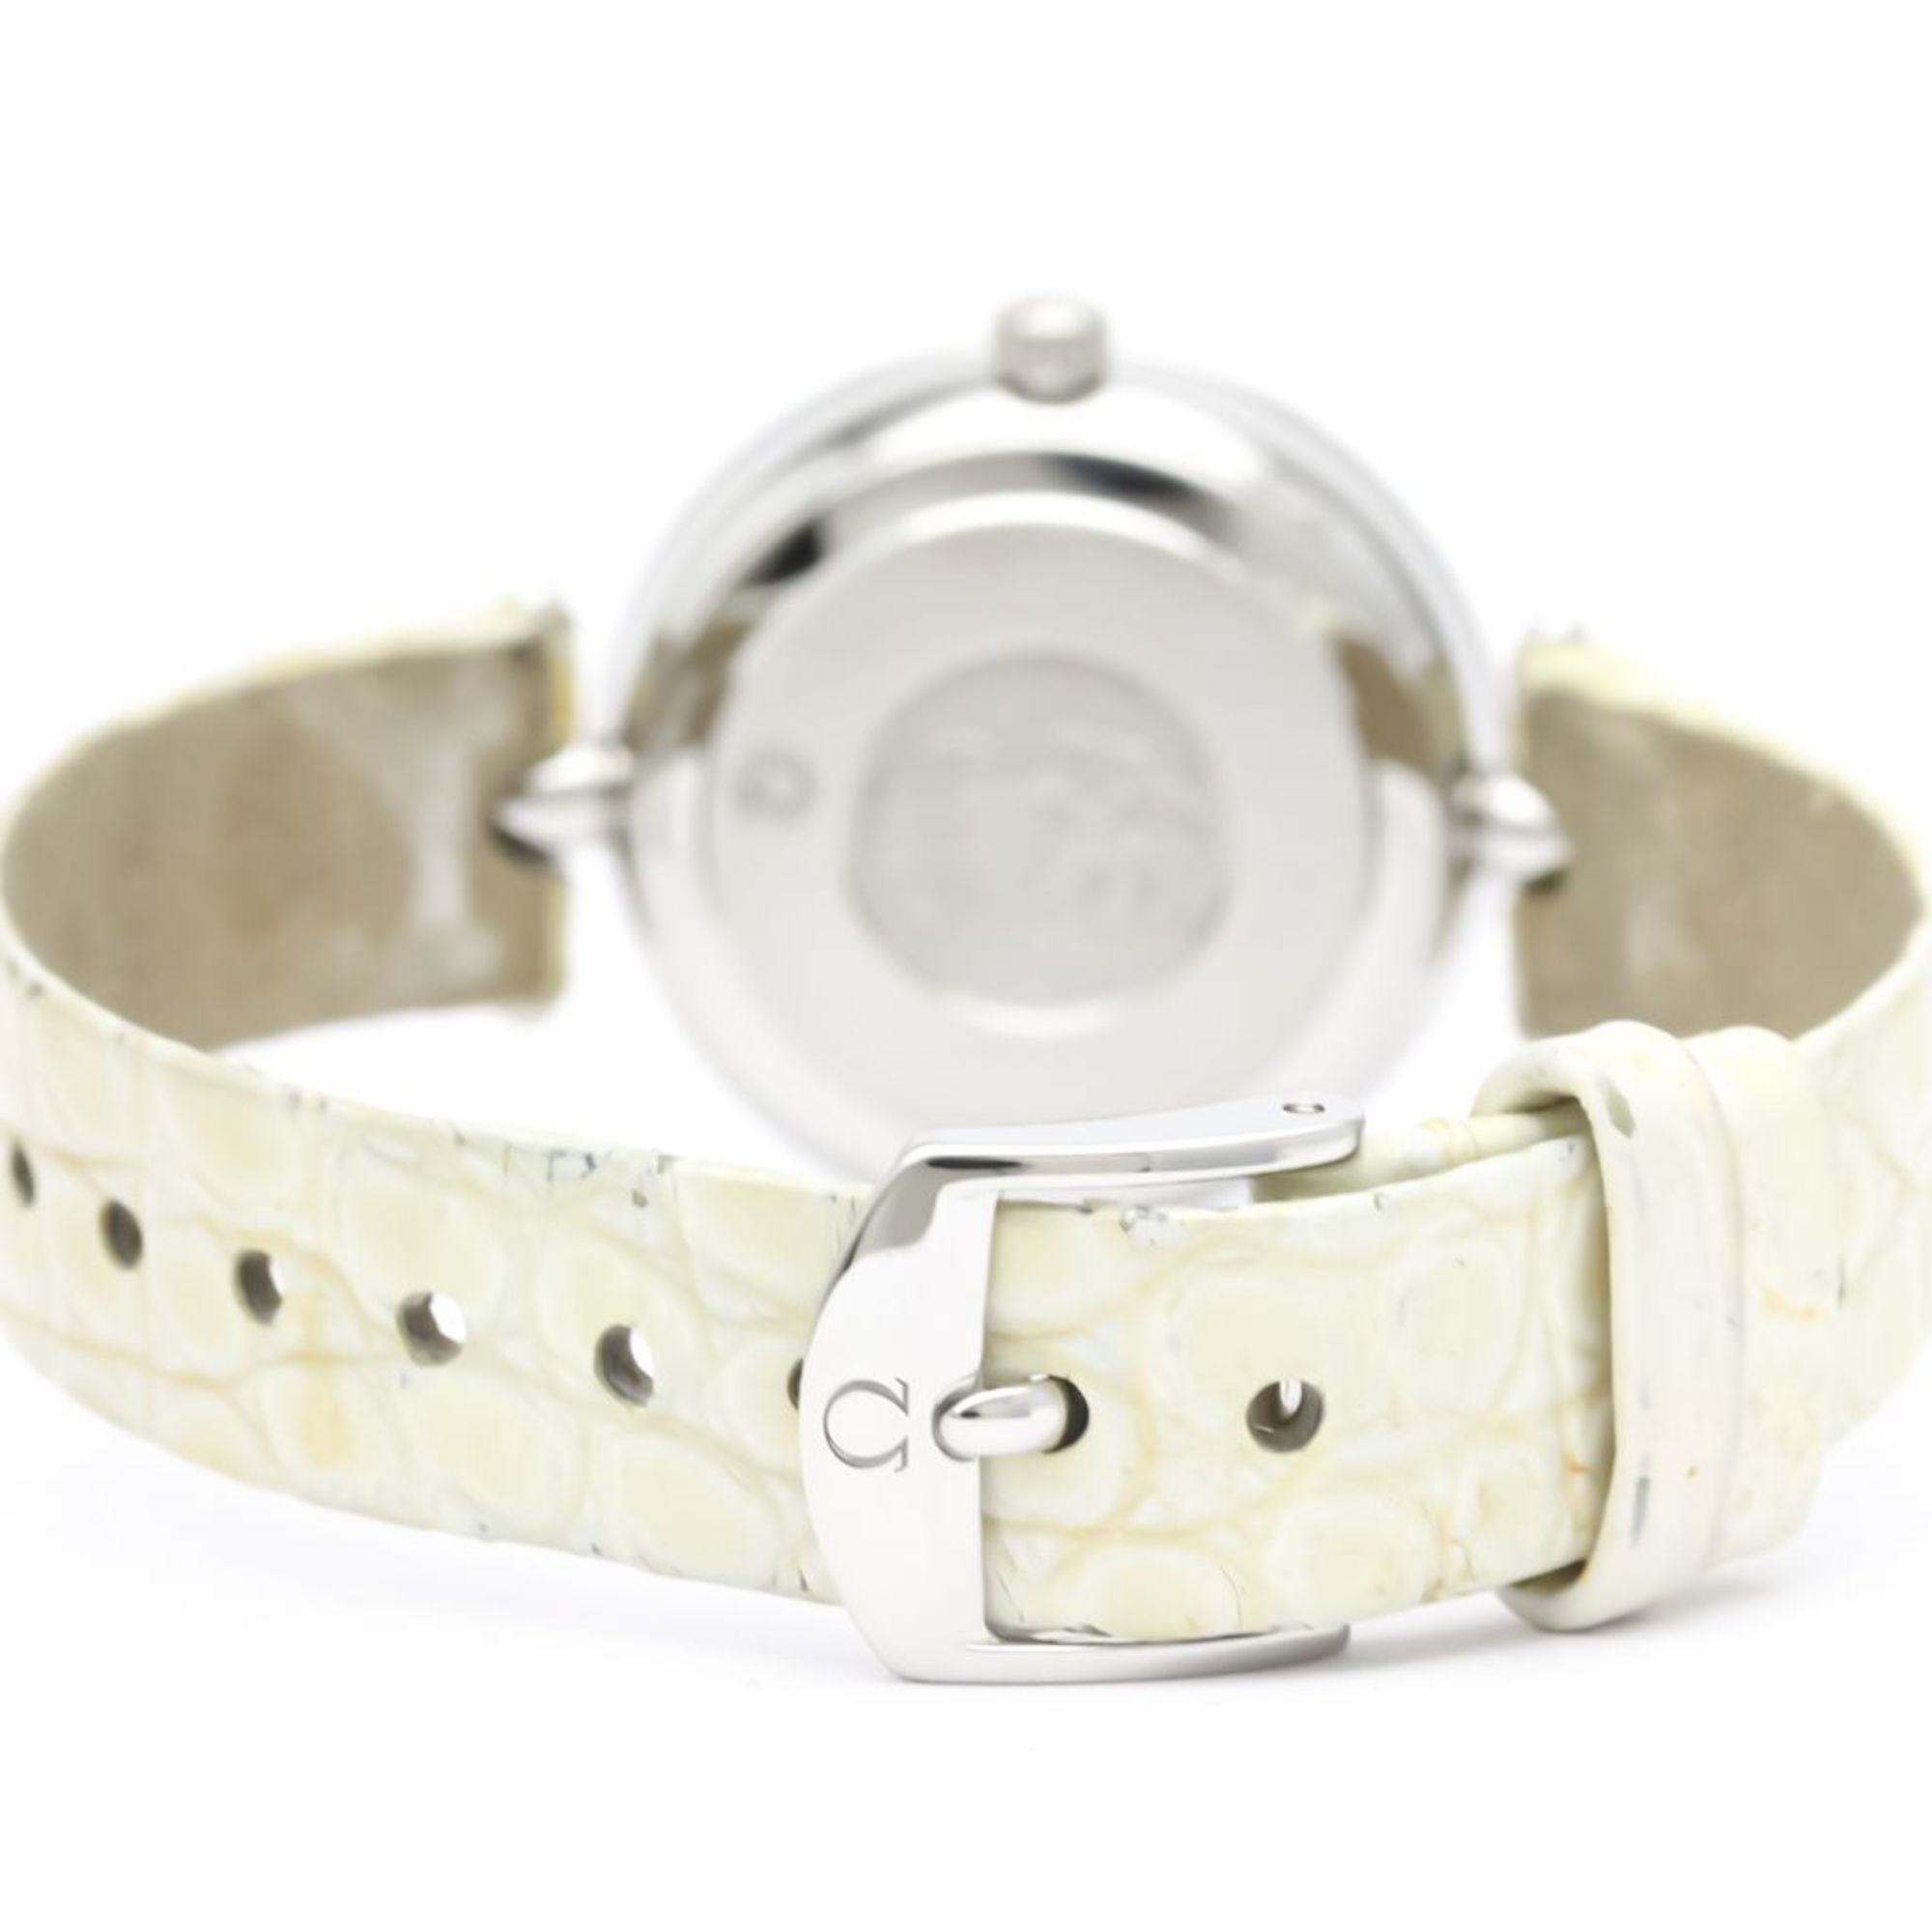 OMEGA De Ville Prestige  Dew Drop Diamond Watch 424.13.27.60.55.001 BF551604